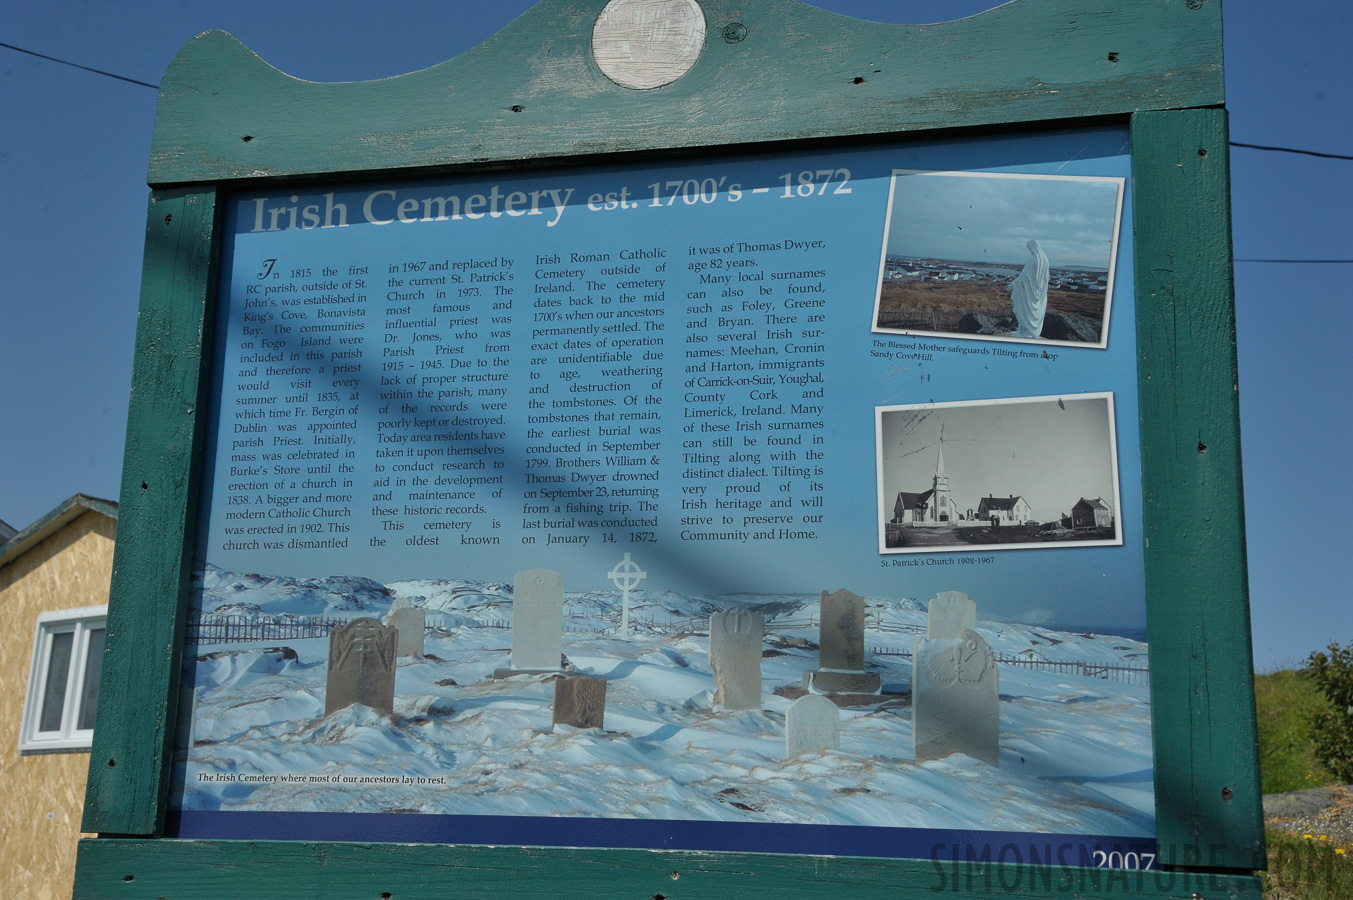 Irish Cementery [45 mm, 1/1250 Sek. bei f / 11, ISO 400]